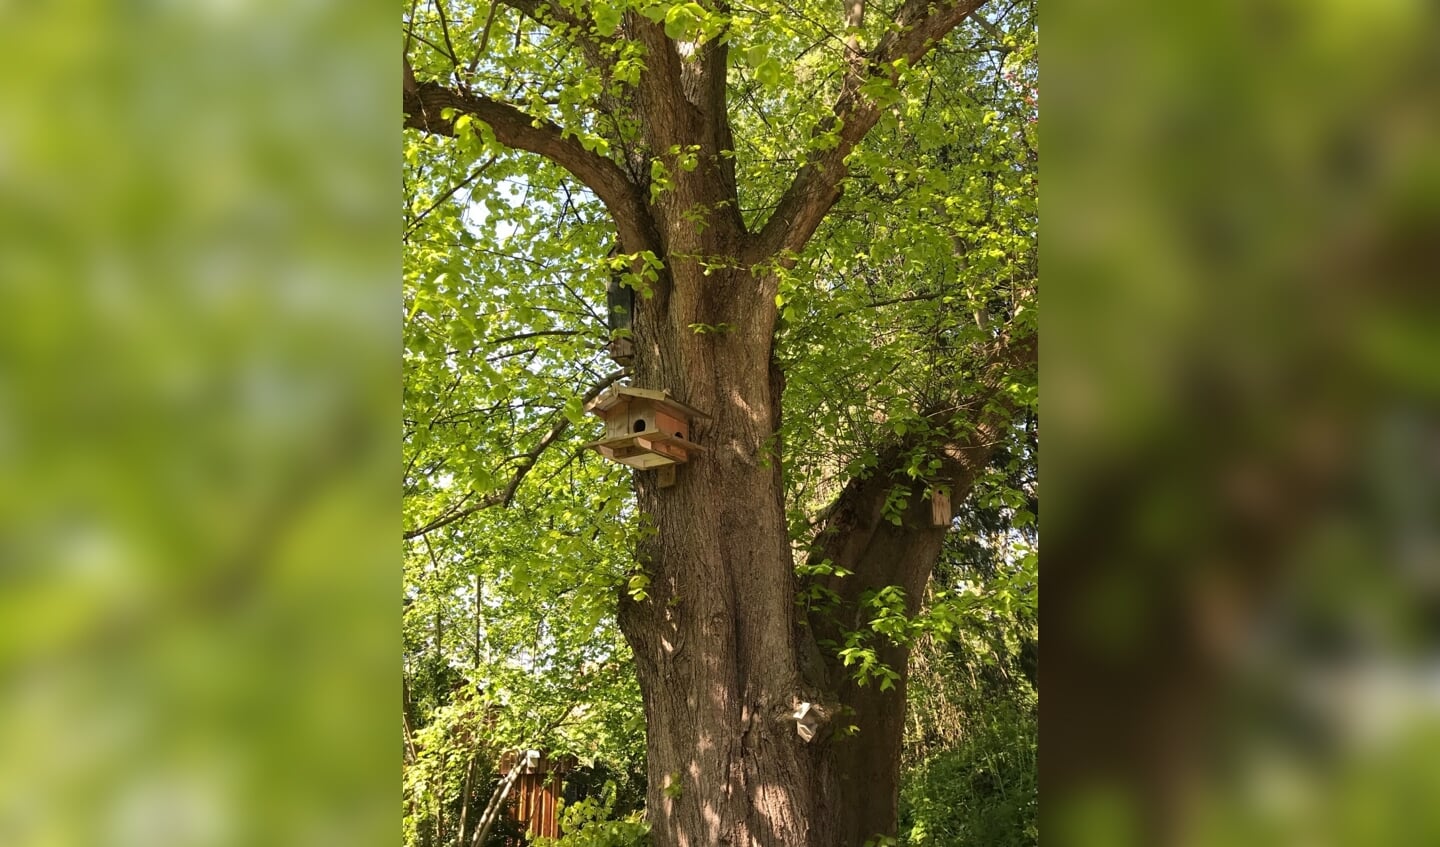 De Eefdese boom is een linde met een geschatte leeftijd van 150 jaar. Foto: PR